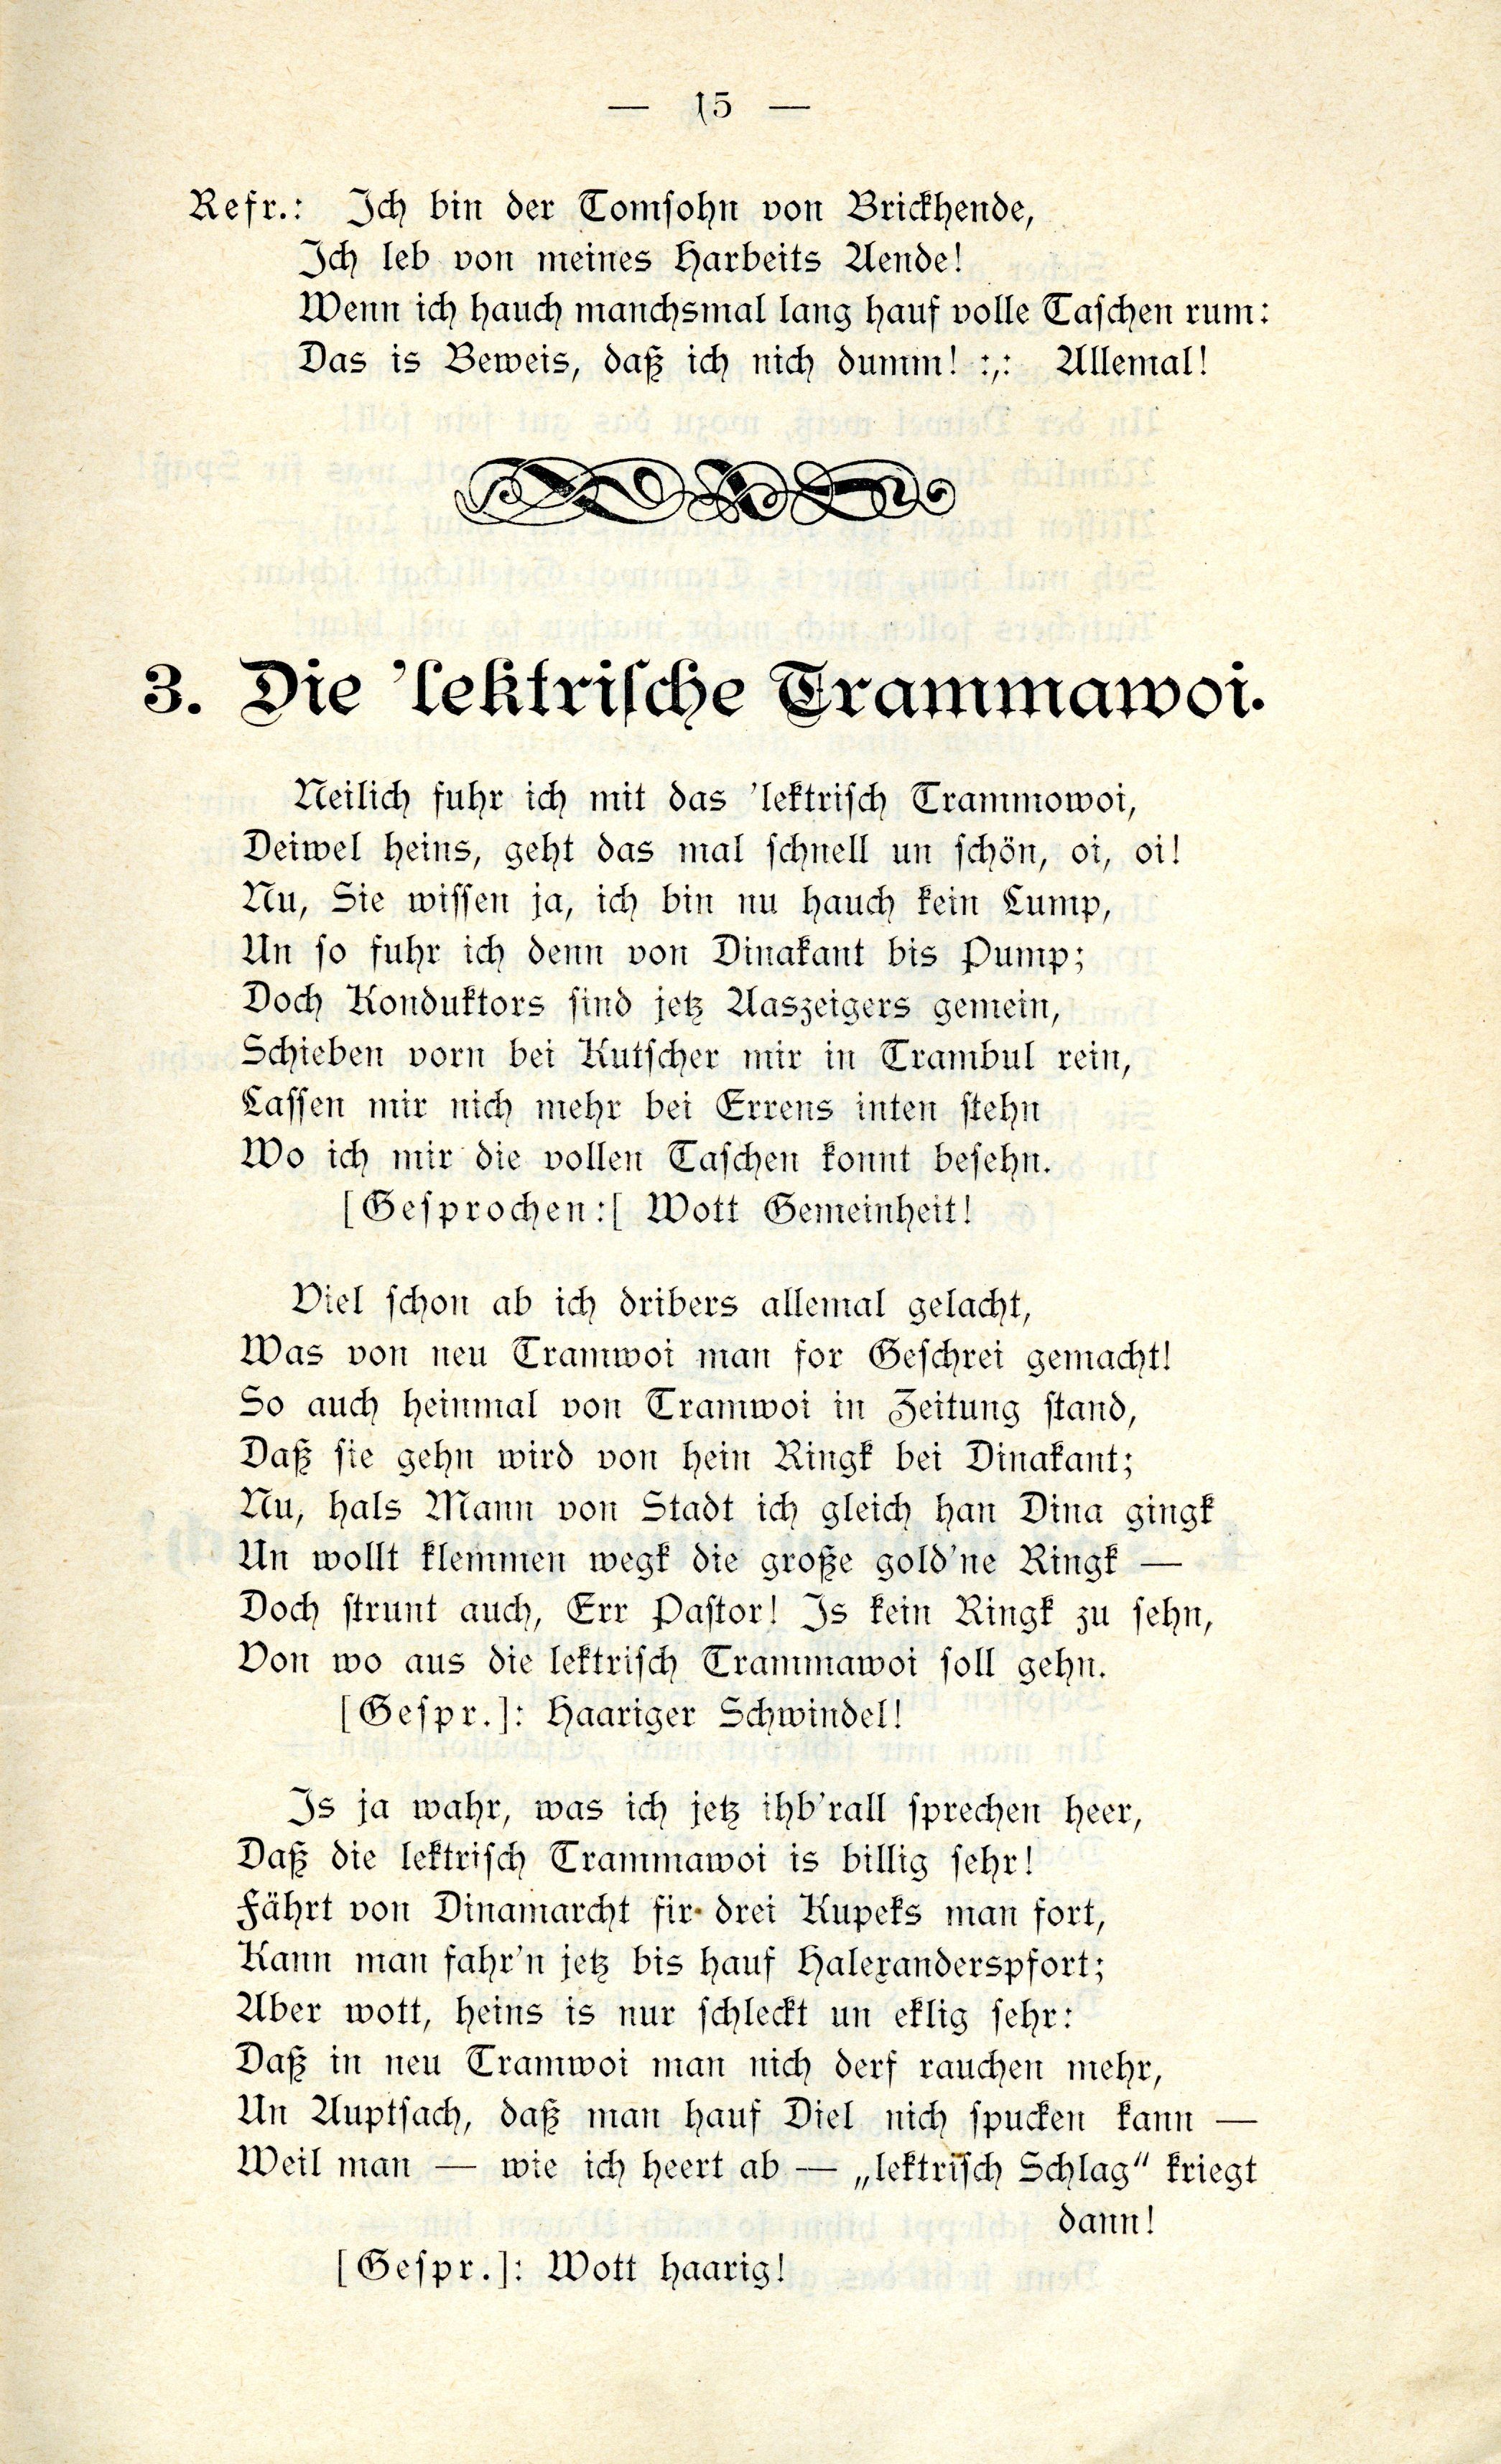 Schanno von Dünakant (1903) | 16. (15) Main body of text